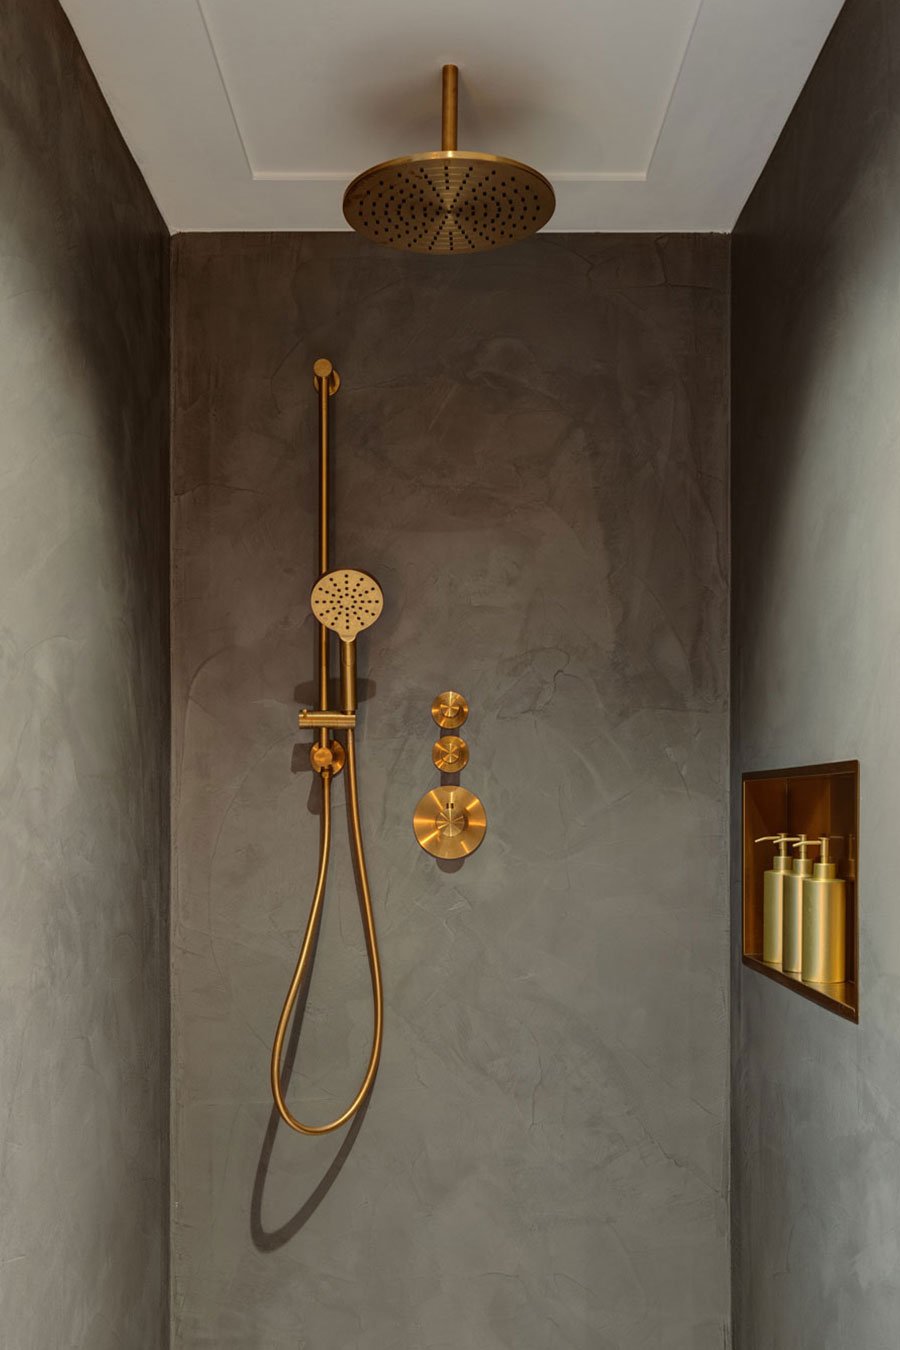 Altaar Elegantie Circulaire Binnenkijken bij een luxe badkamer met 'Hotel chic-gevoel' | Sanitairwinkel